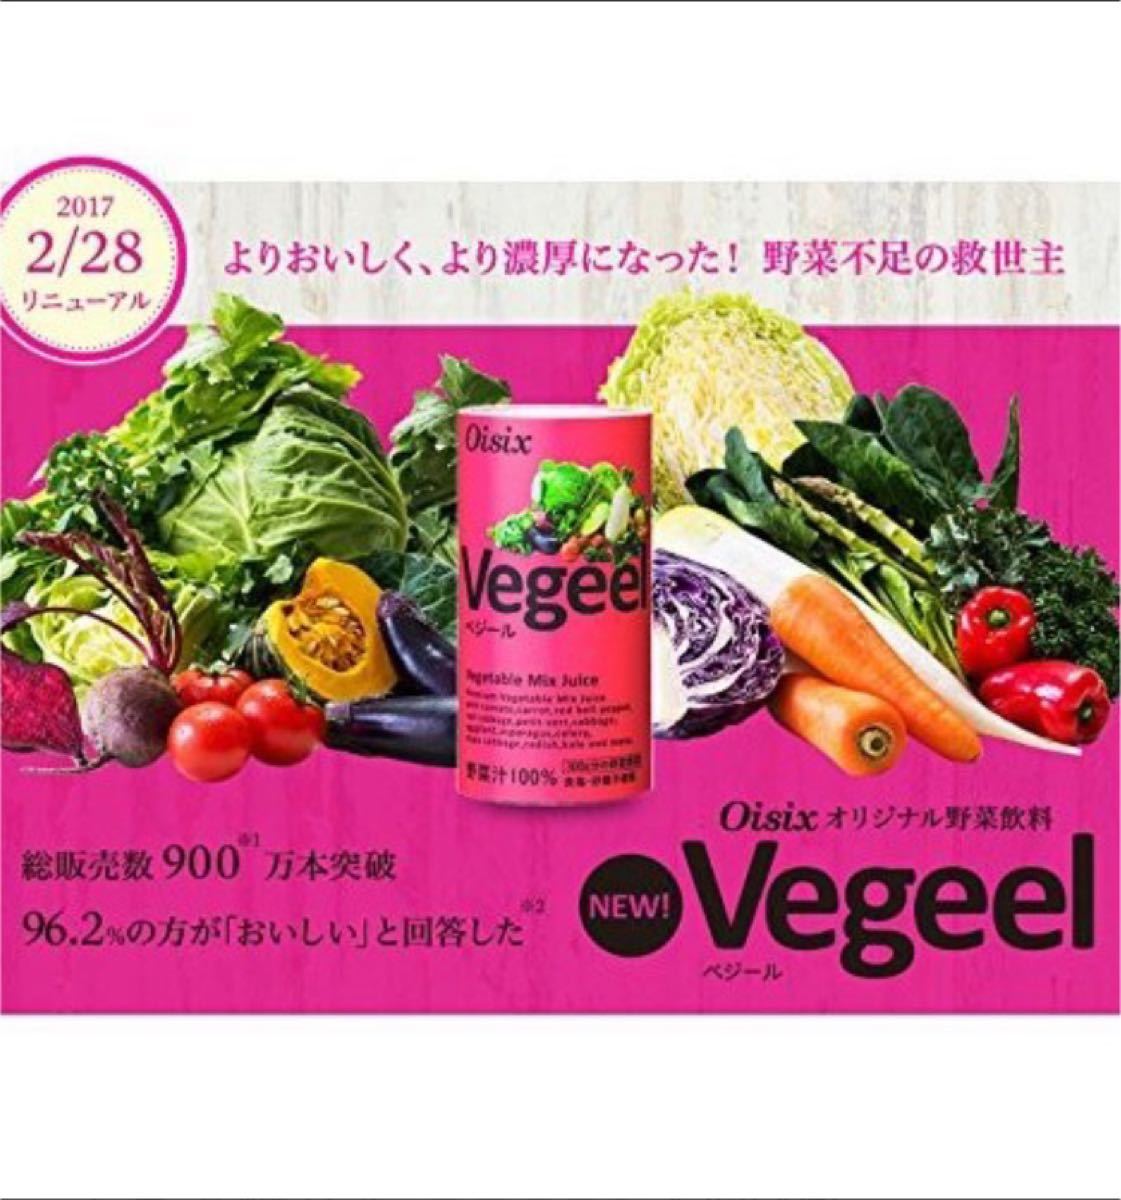 アウトレット☆送料無料 oisix オイシックス Vegeelべジール 野菜 